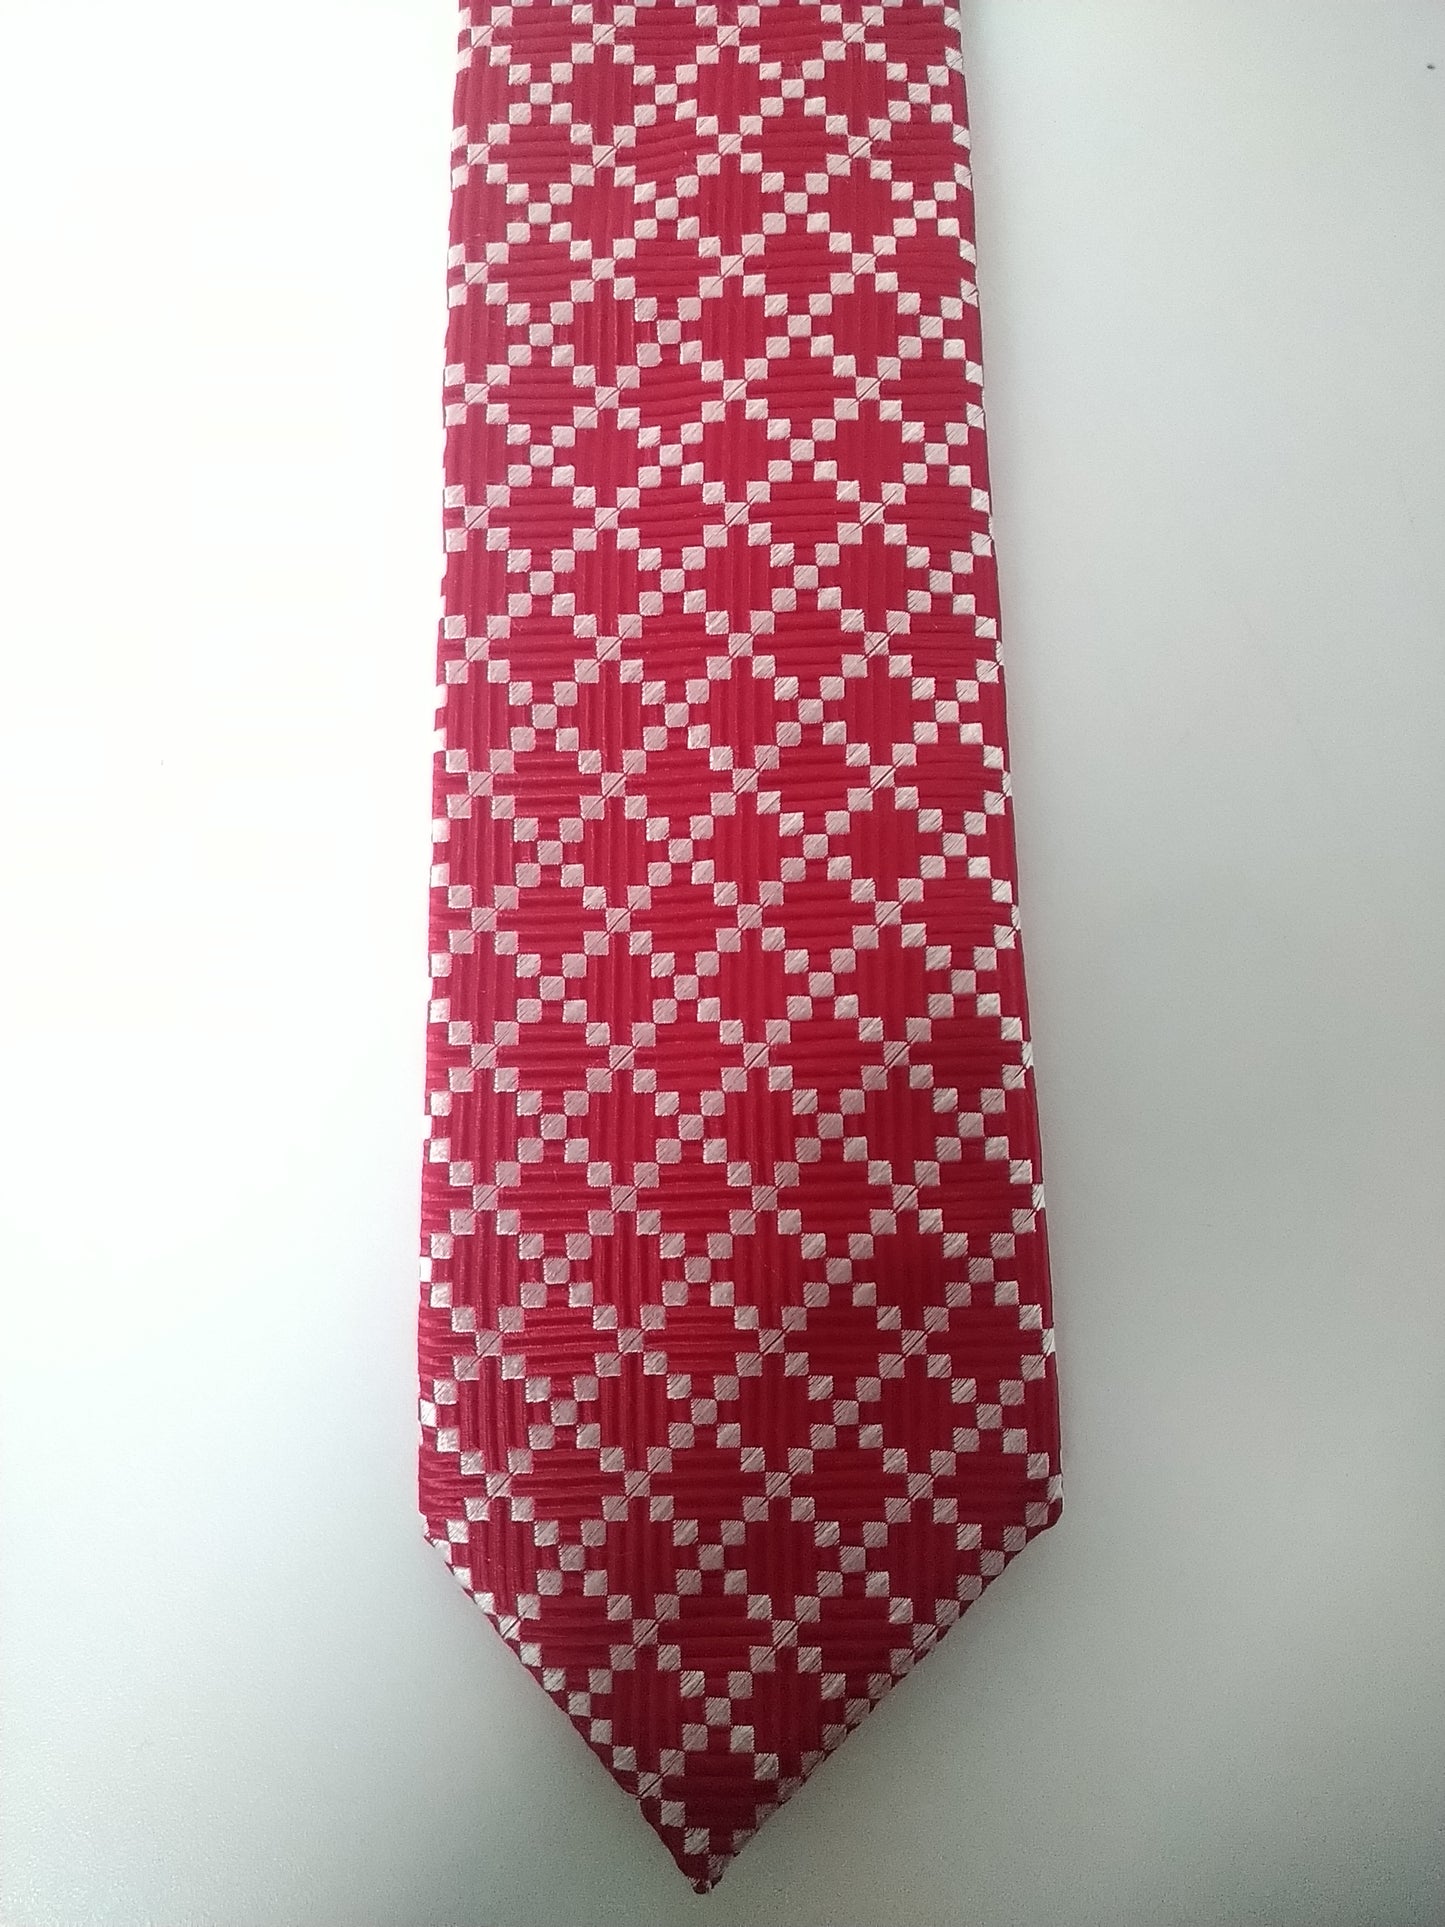 Cravate Segni & Disregni. Motif blanc rouge. 100% de soie.